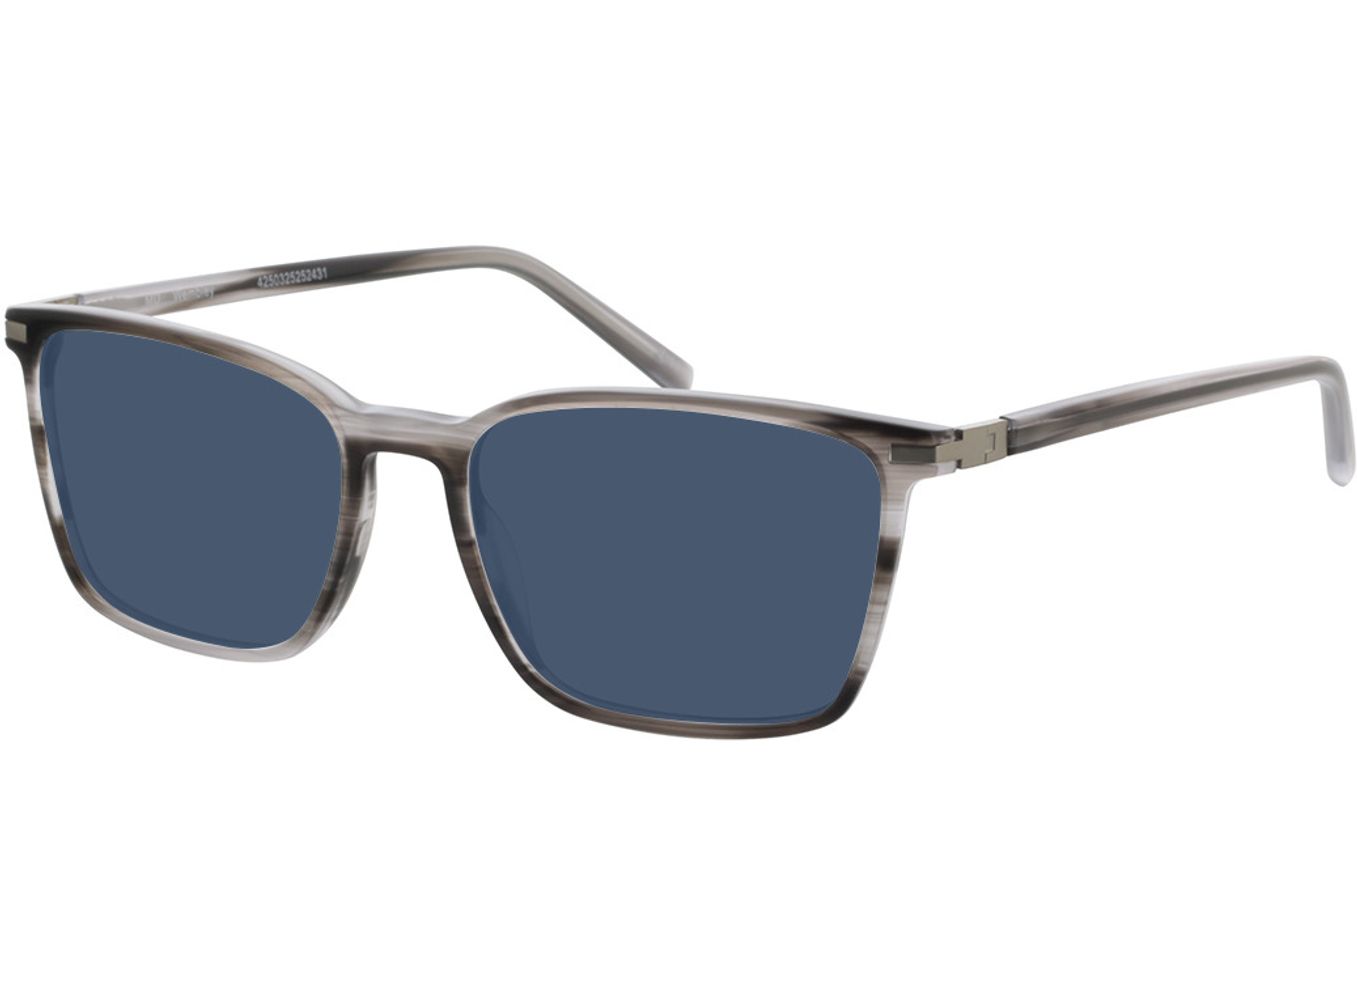 Wembley - grau/silber Sonnenbrille ohne Sehstärke, Vollrand, Eckig von Brille24 Collection